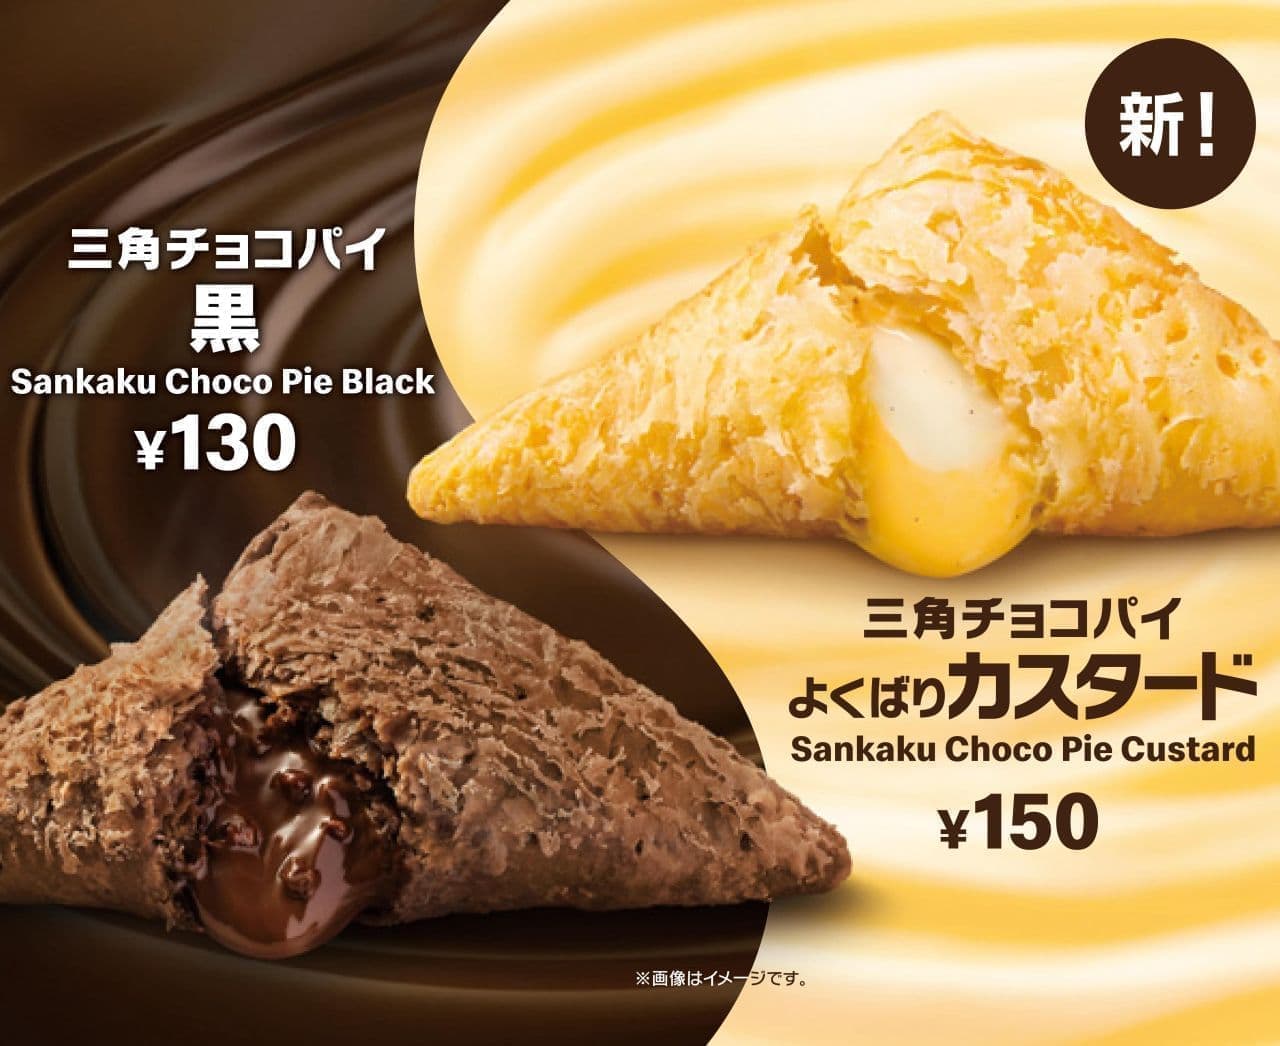 McDonald's "Triangular Choco Pie Well Custard" "Triangular Choco Pie Black"